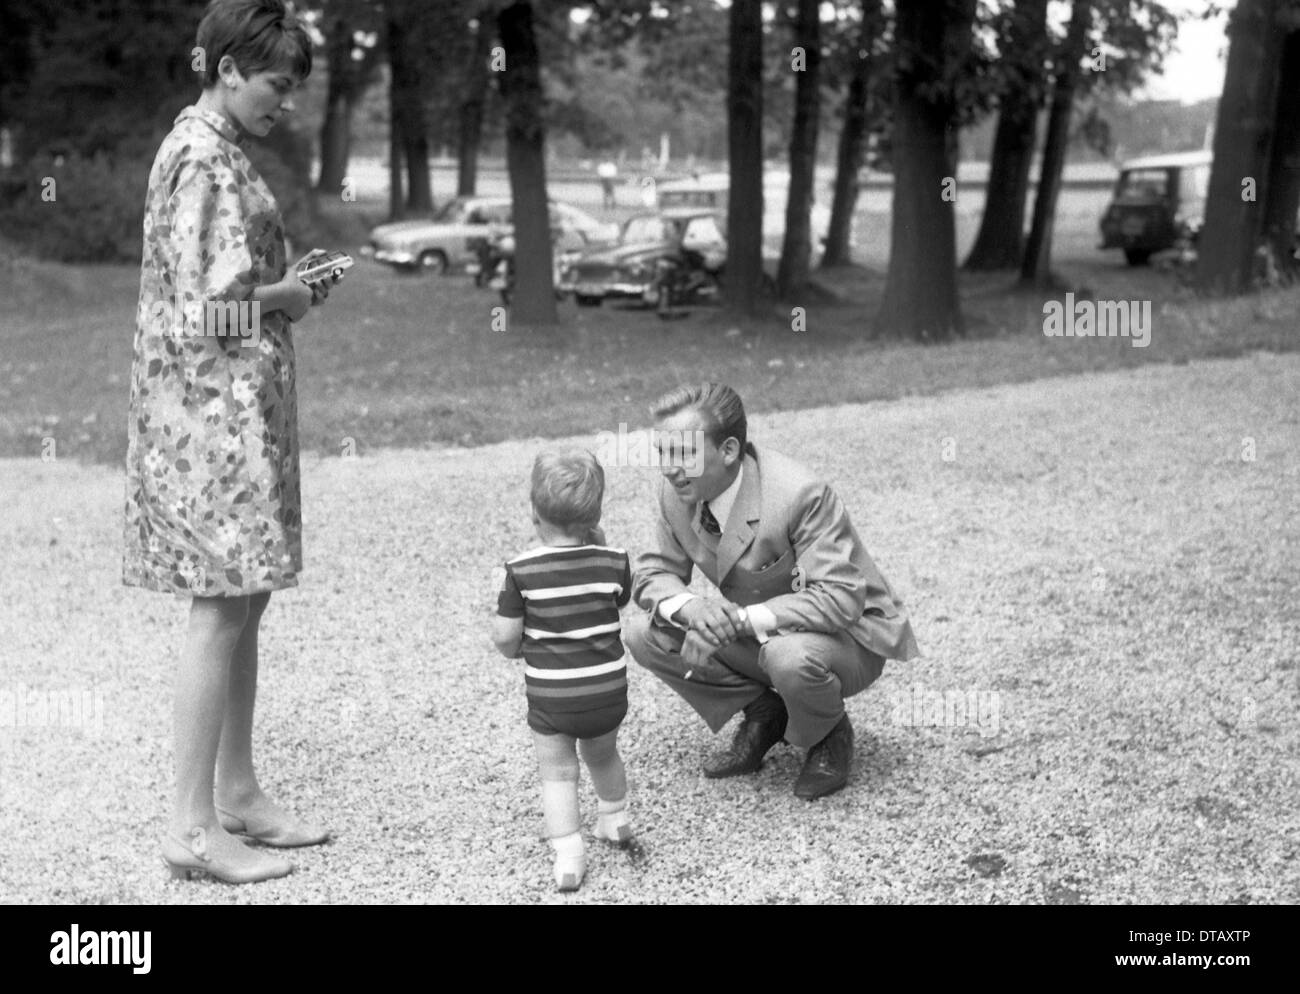 Homme, femme et enfant au cours d'une balade, Hoppegarten, GDR Banque D'Images